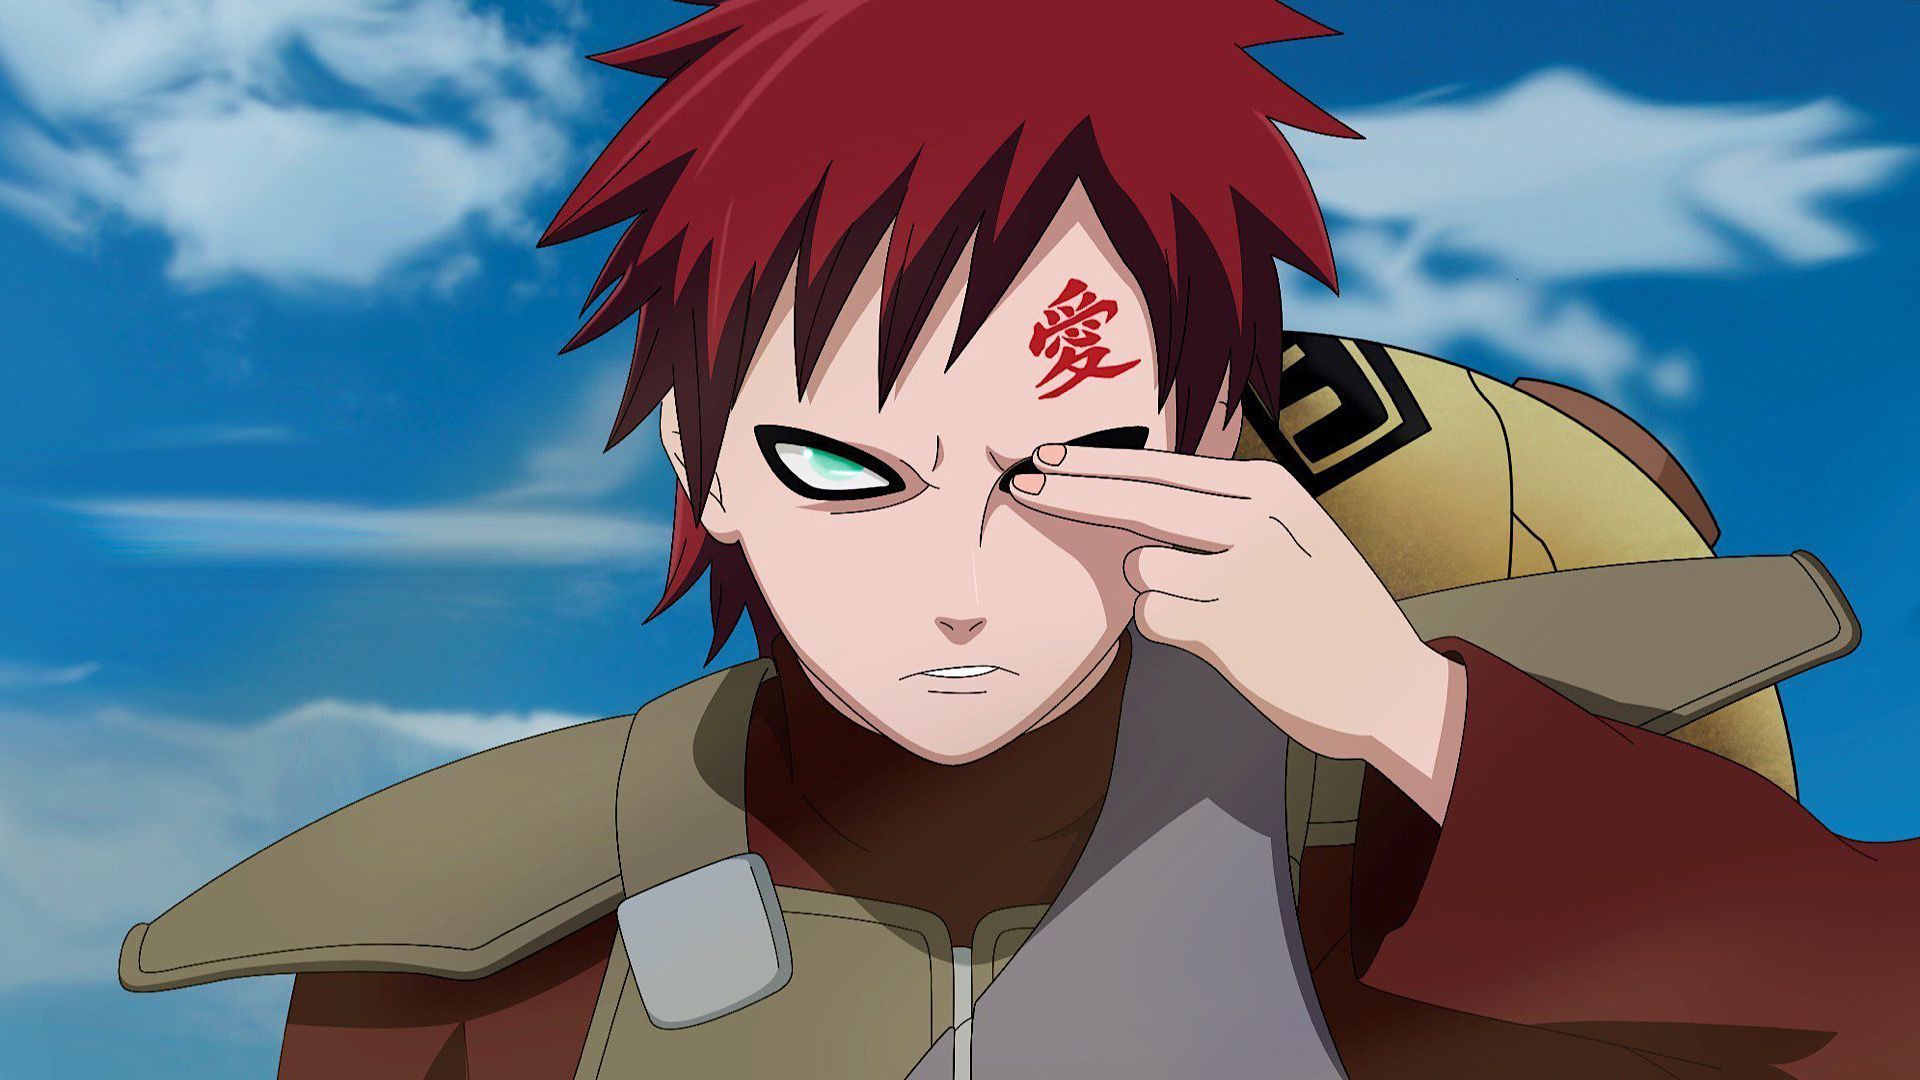 Gaara is a the Kazekage (Image via Naruto Anime)